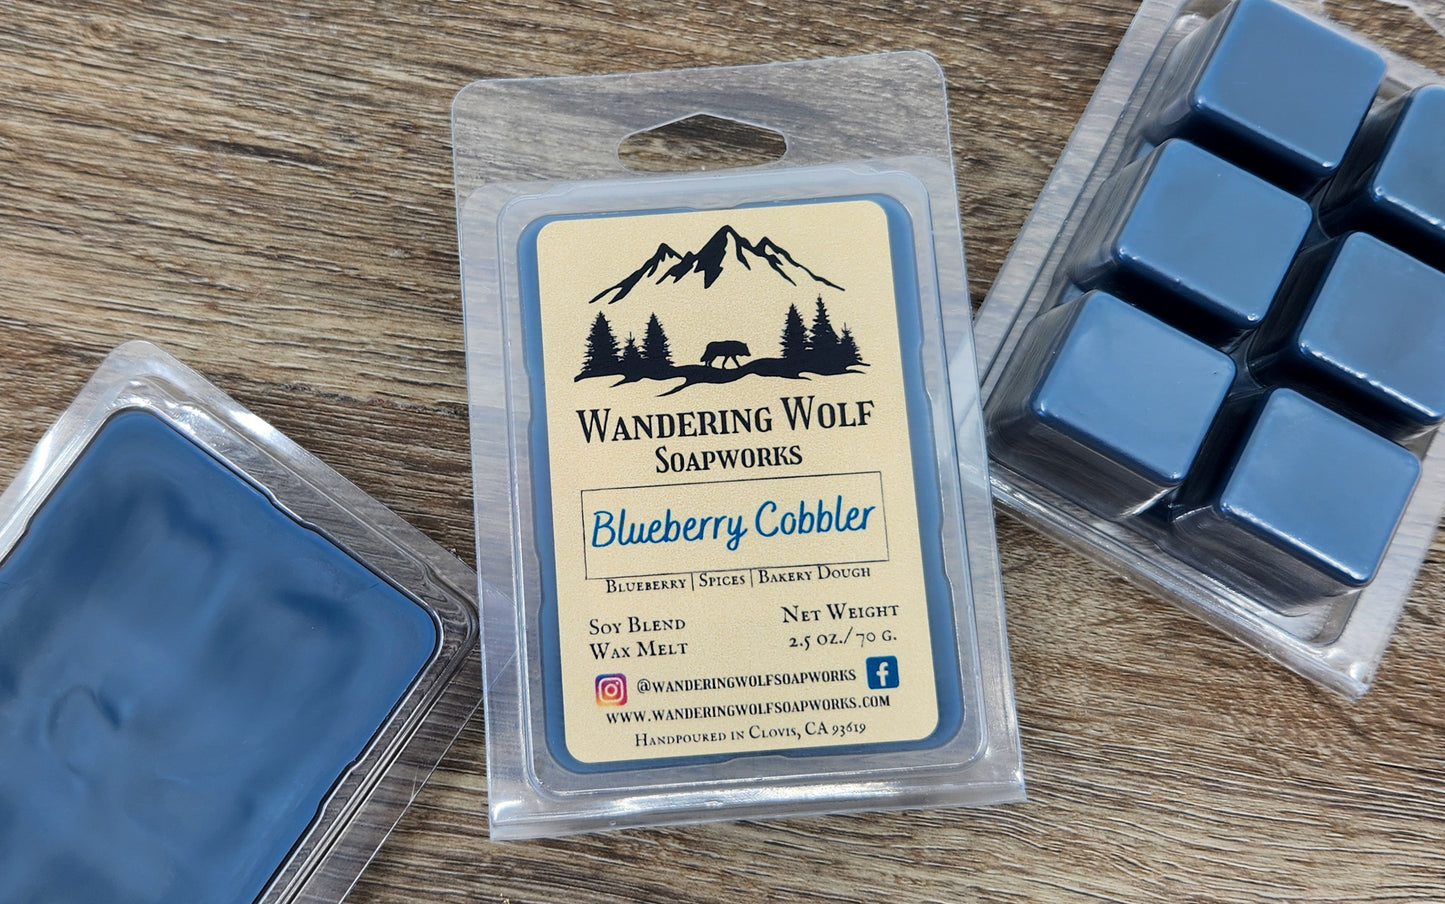 Blueberry Cobbler Wax Melts